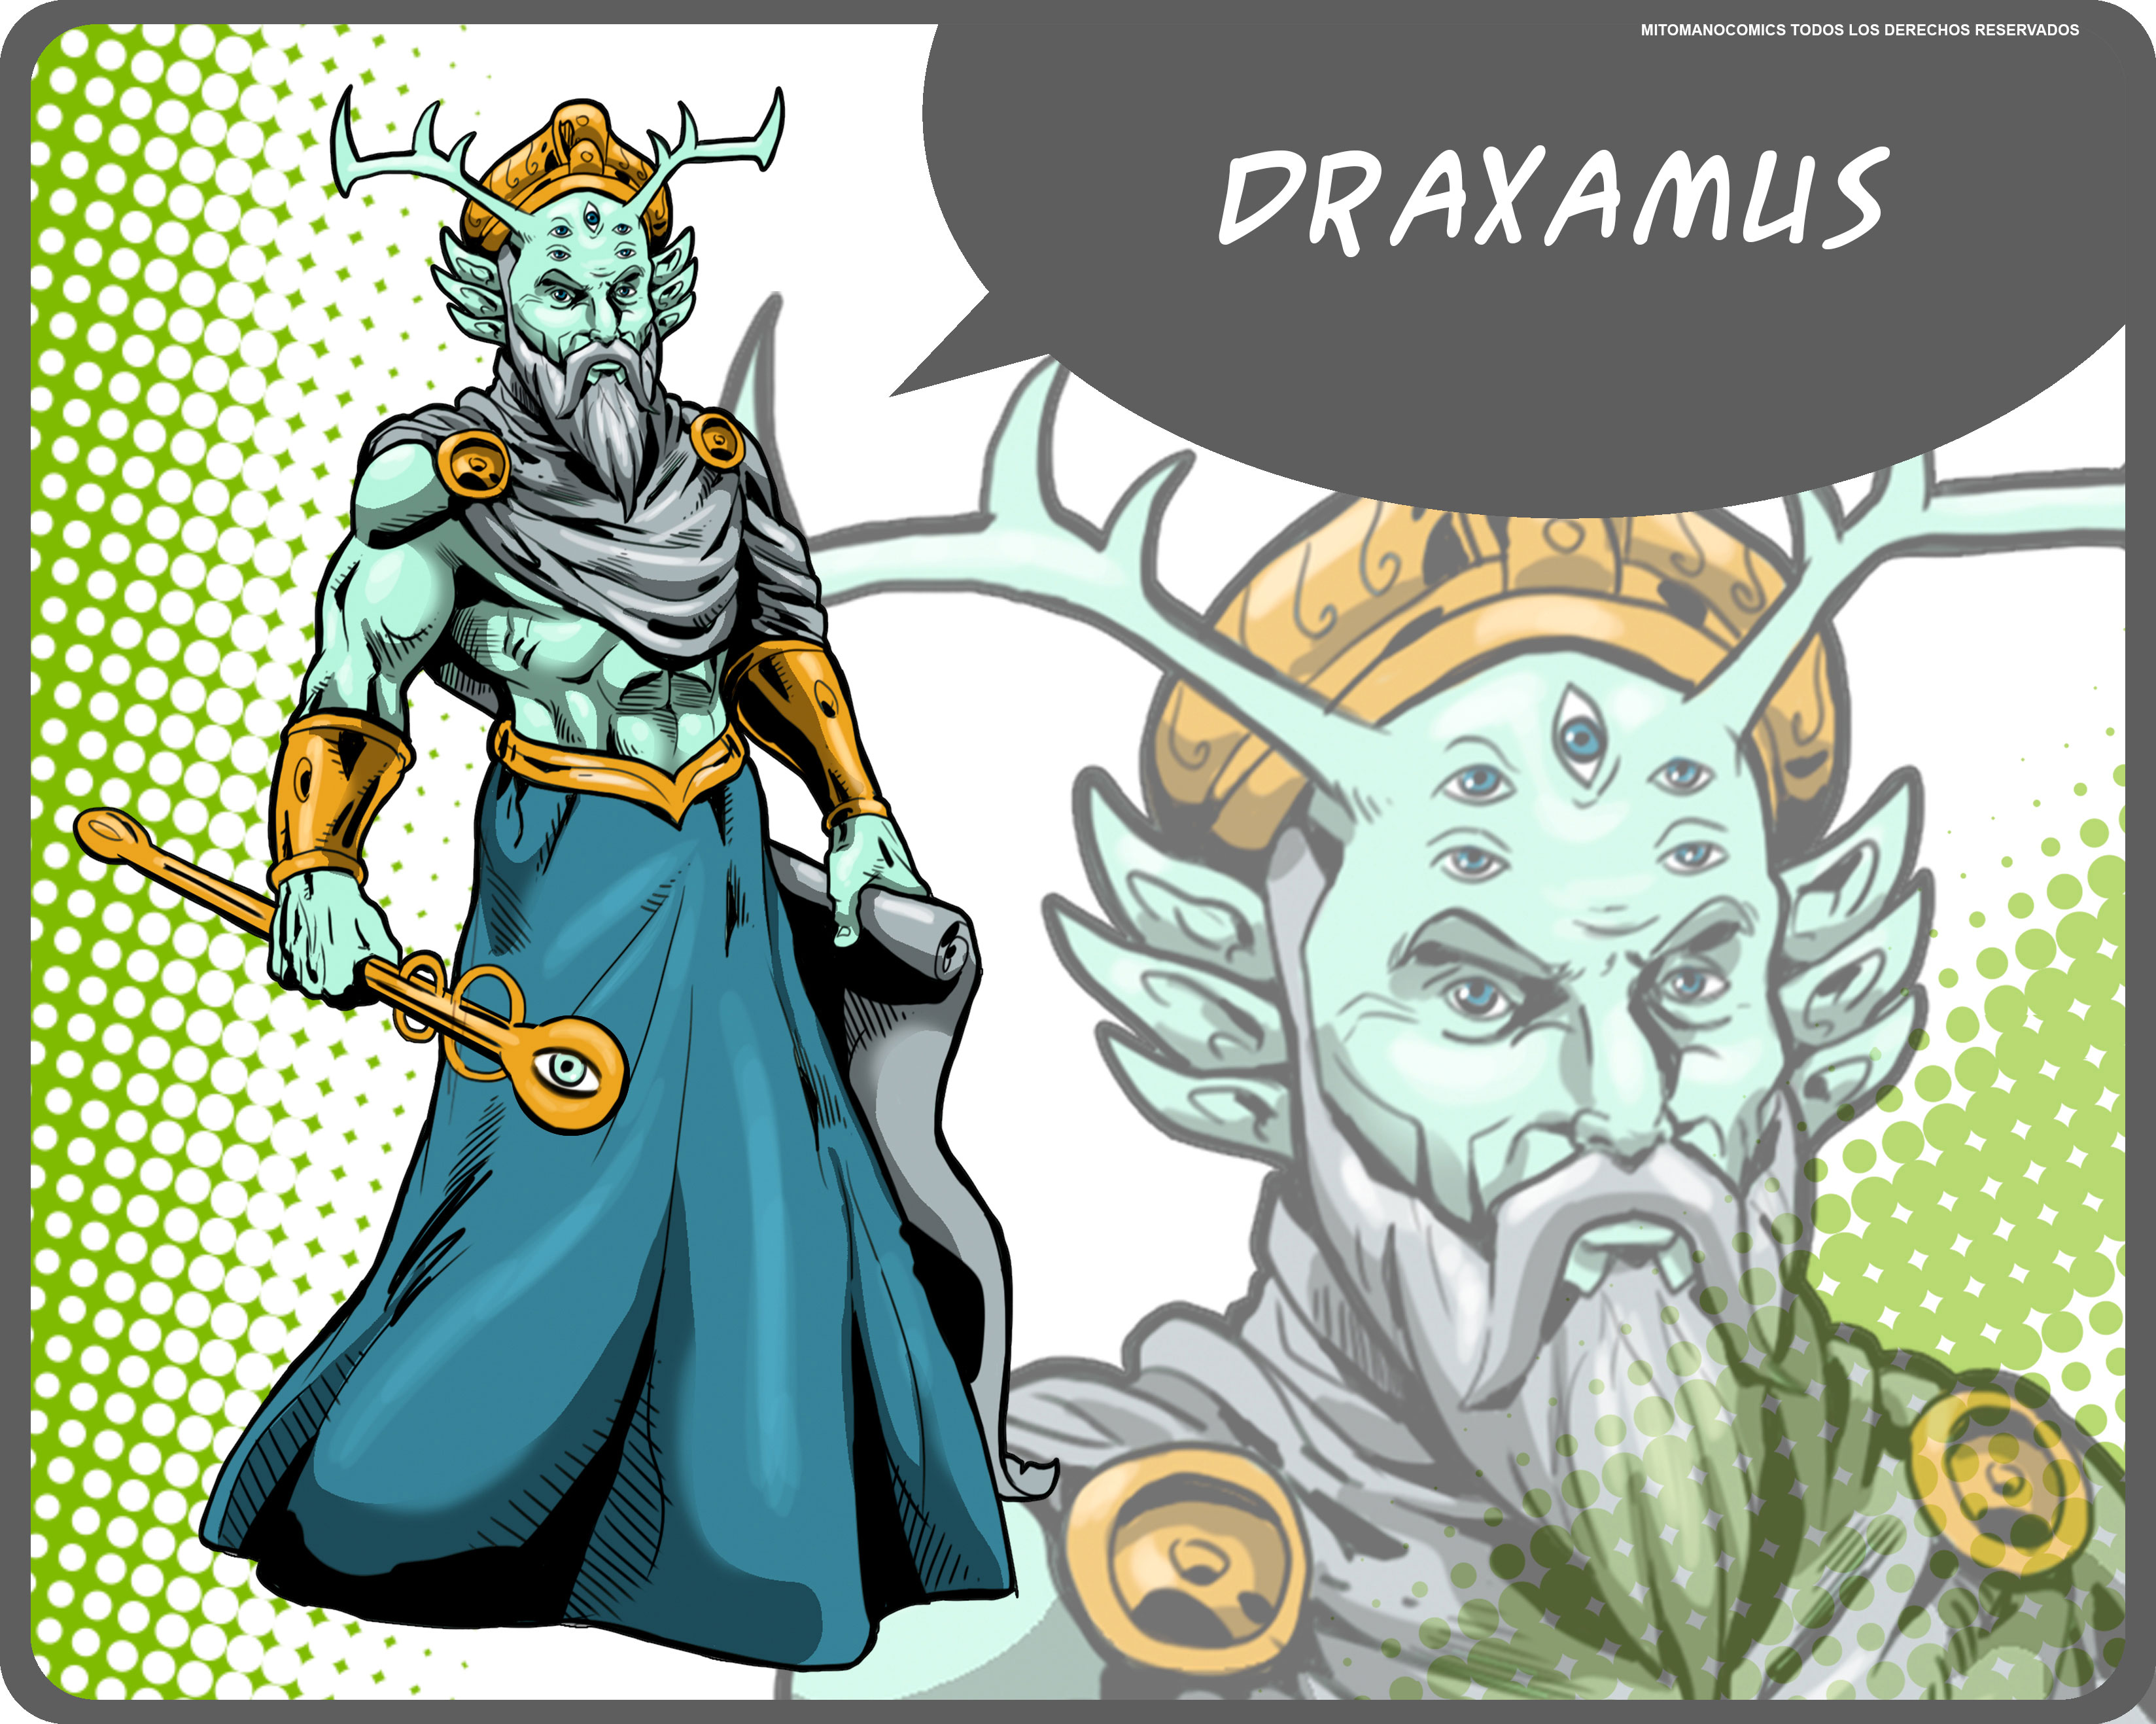 Draxamus